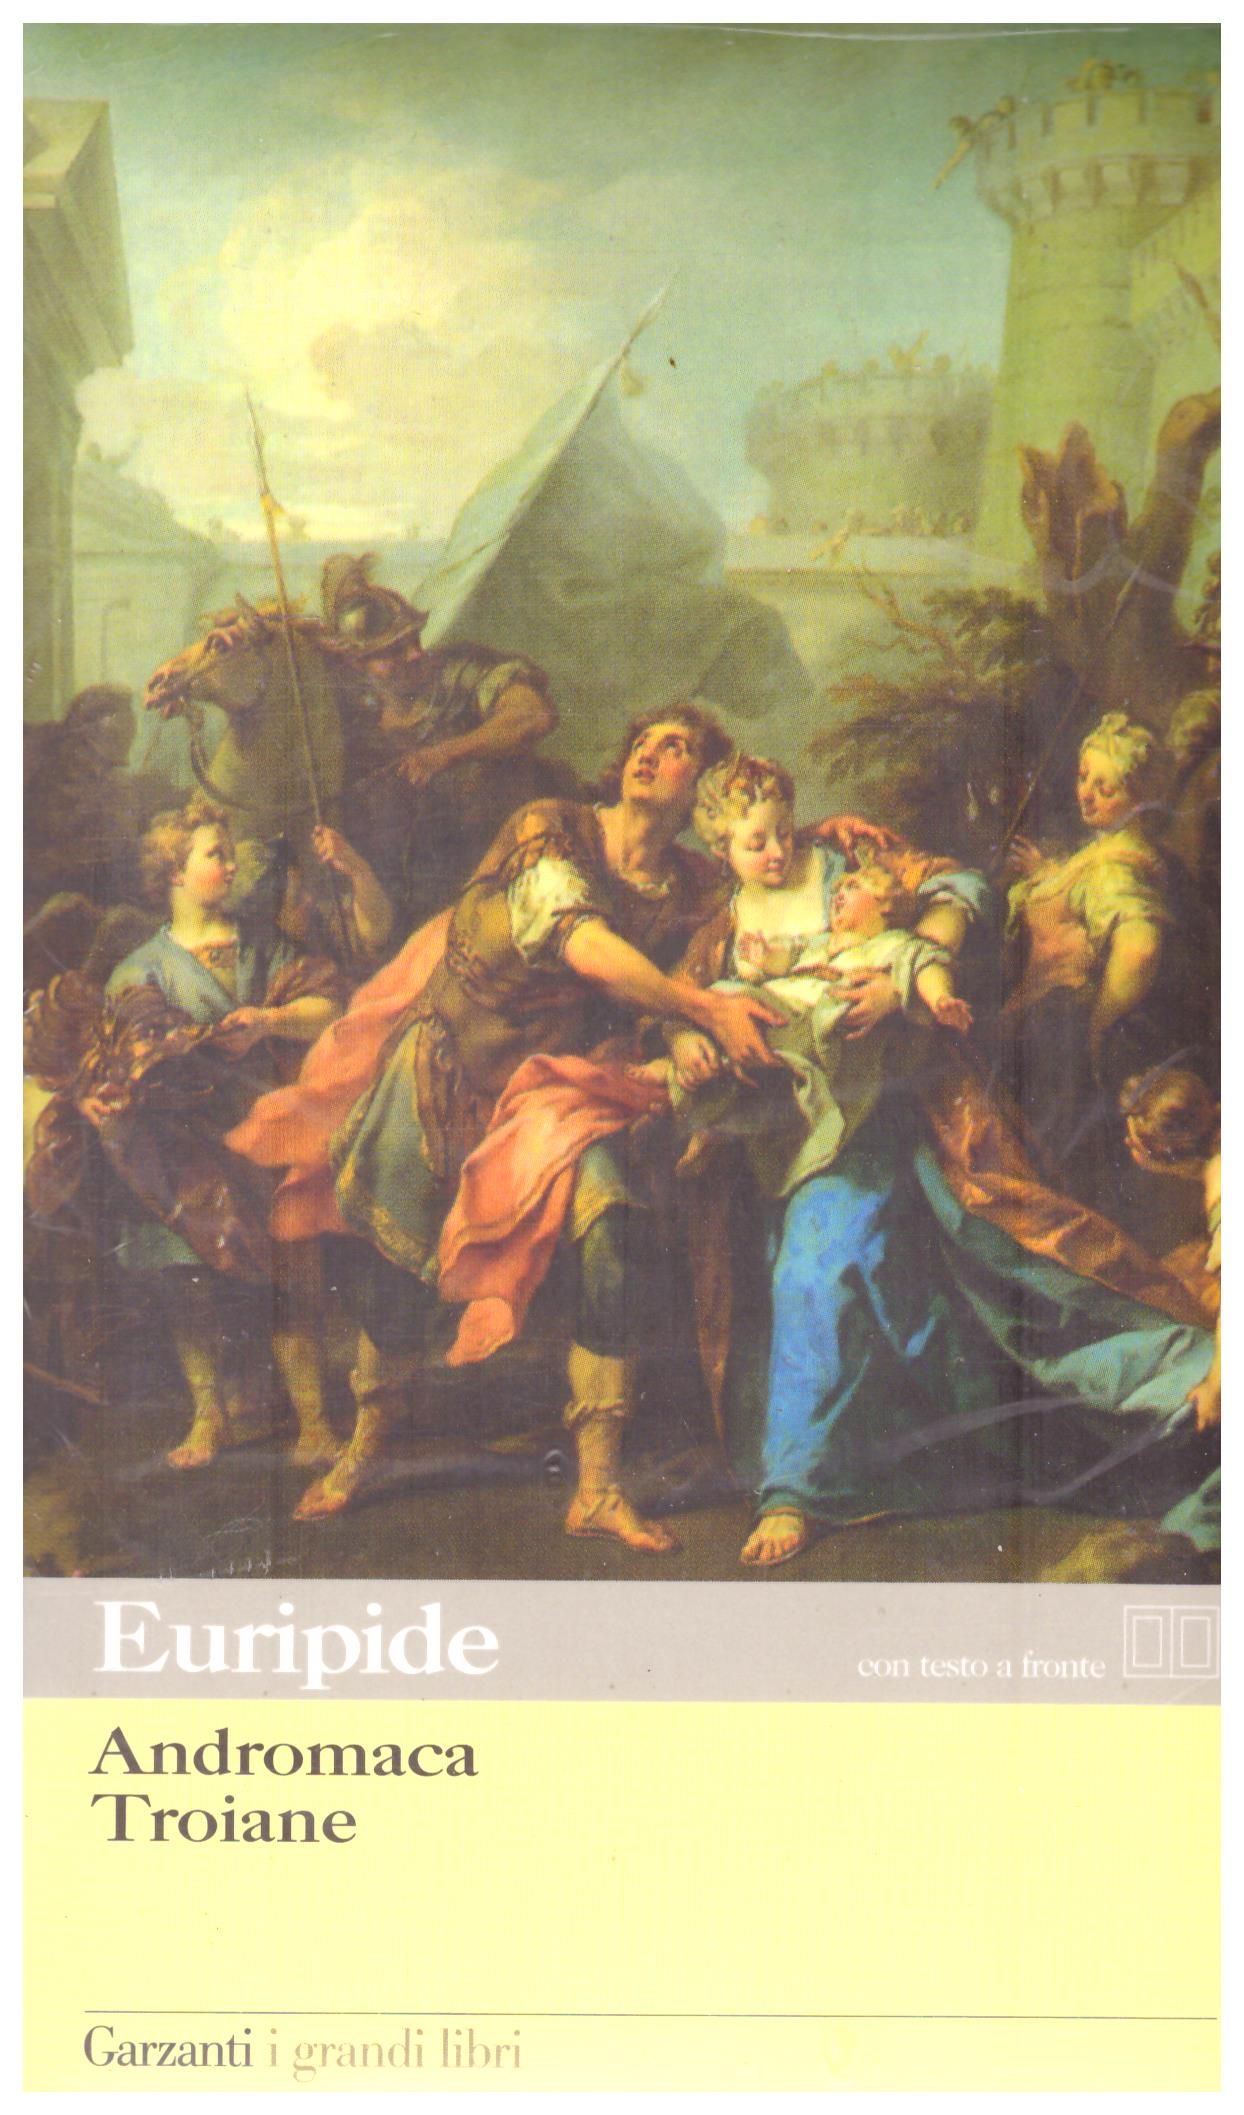 Titolo: Andromaca, Troiane Autore: Euripide Editore: Garzanti 2008